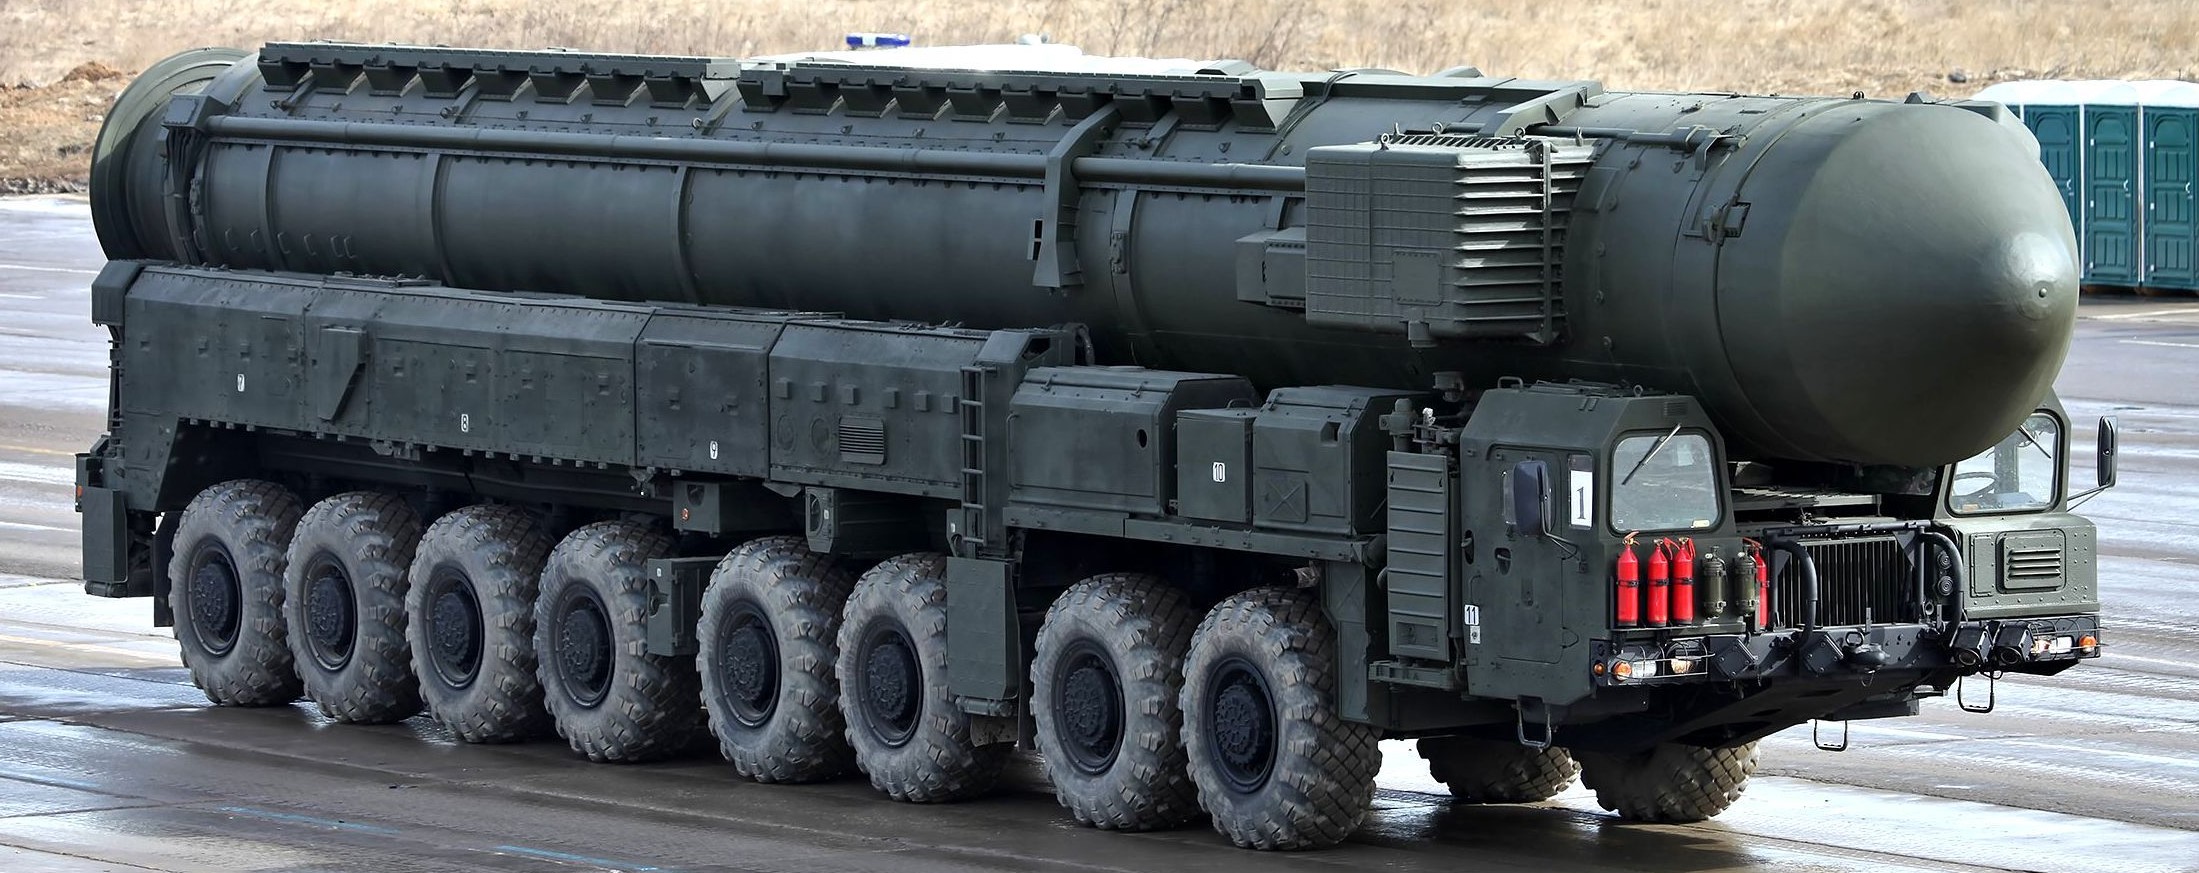 Ρωσικοί διηπειρωτικοί πύραυλοι Topol-M: 34 χρόνια σε υπηρεσία το φόβητρο της Δύσης [βίντεο]